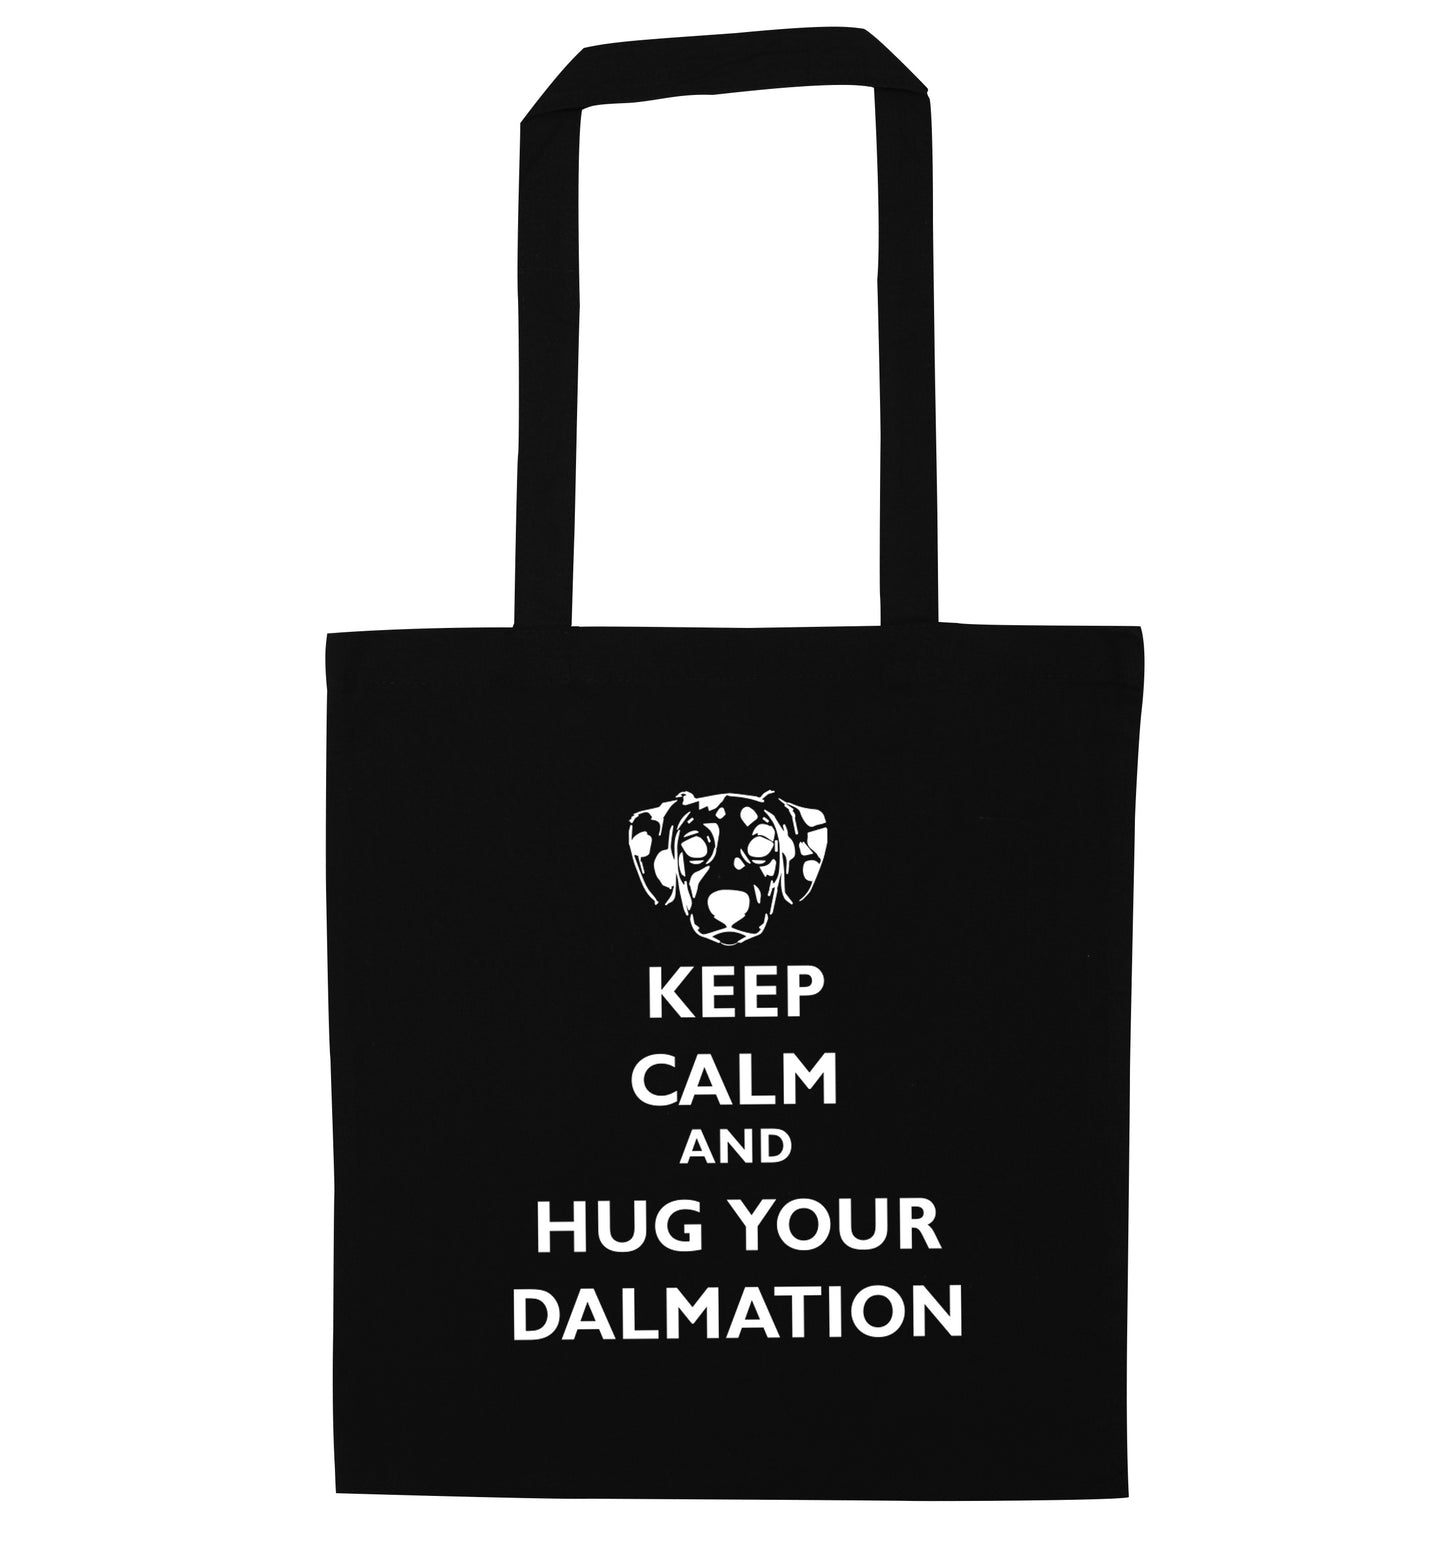 Keep calm and hug your dalmation black tote bag